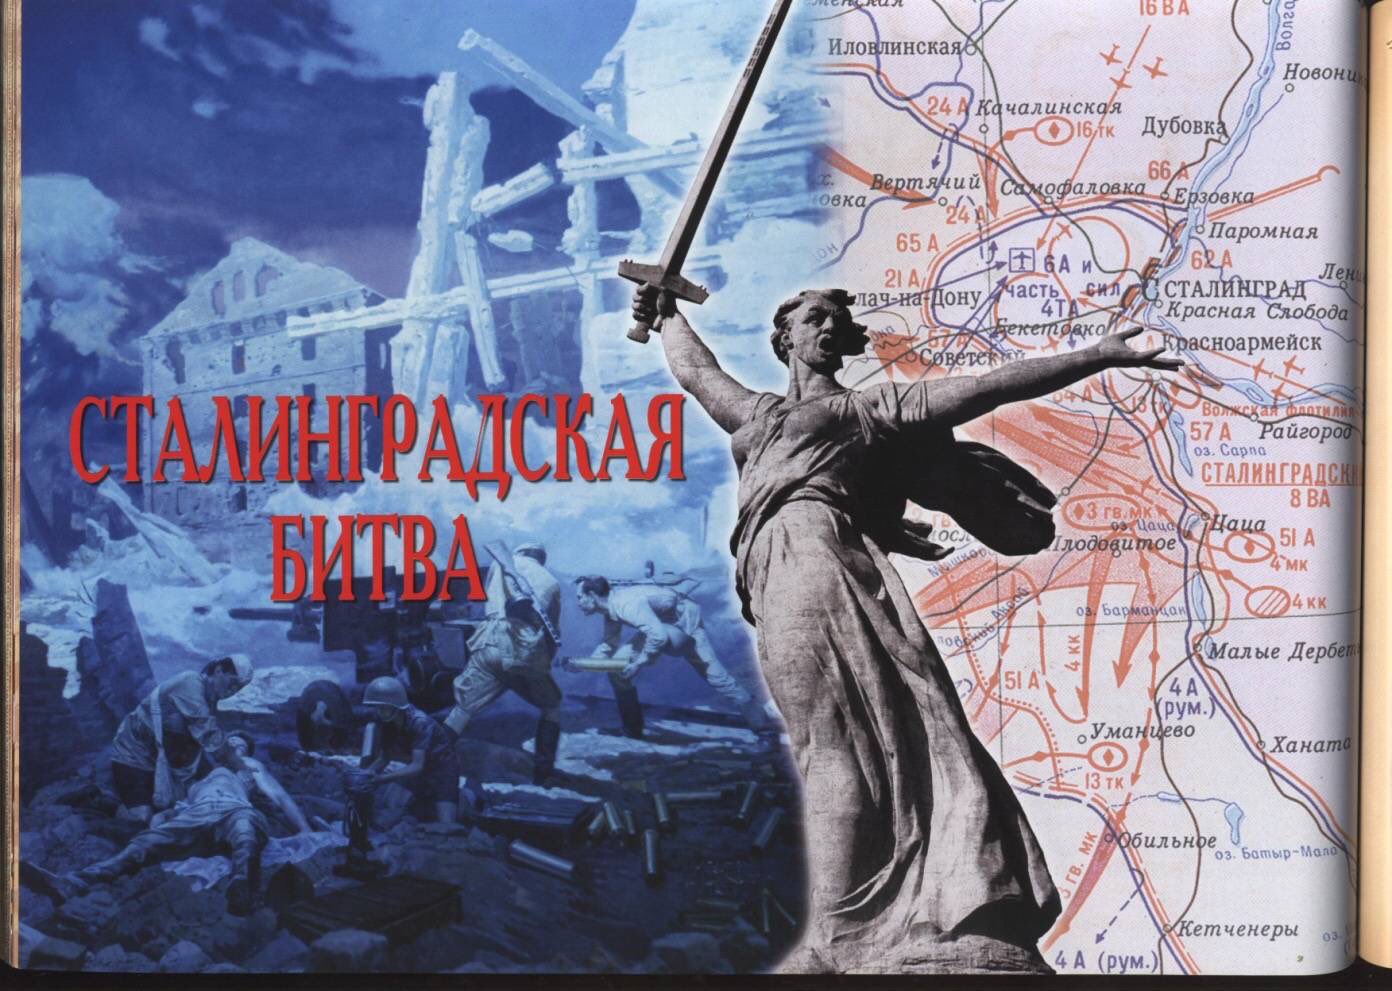 80 лет со дня победы Вооруженных сил СССР над армией гитлеровской Германии в 1943 году в Сталинградской битве.